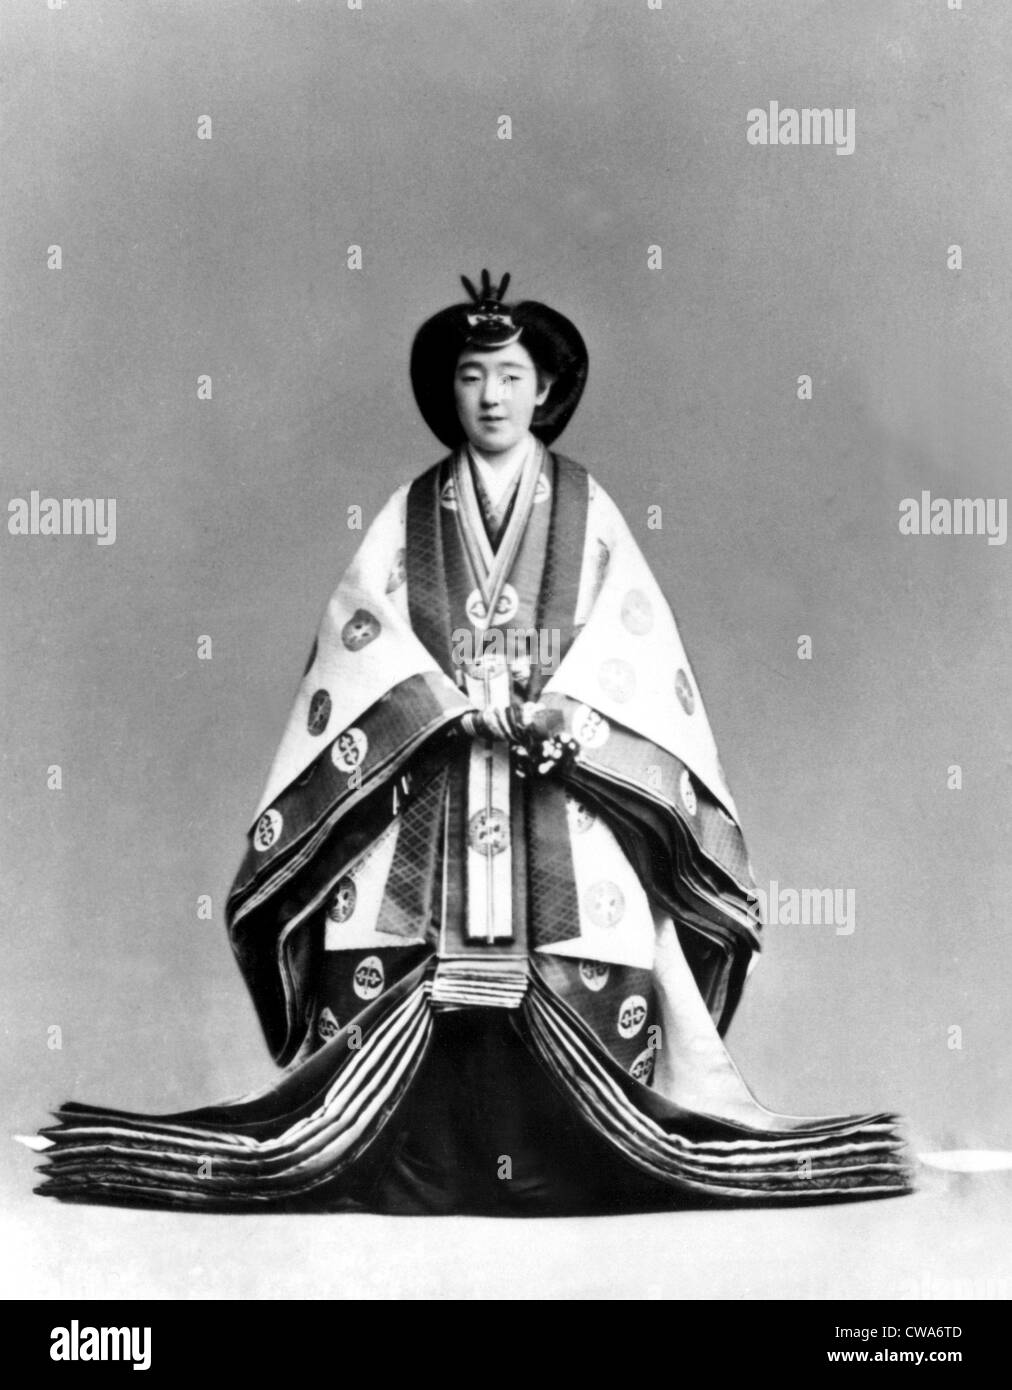 L'impératrice Nagako, épouse de l'empereur du Japon Hirohito, habillé pour la cérémonie du couronnement en 1928.. Avec la permission des Archives / CSU : Banque D'Images